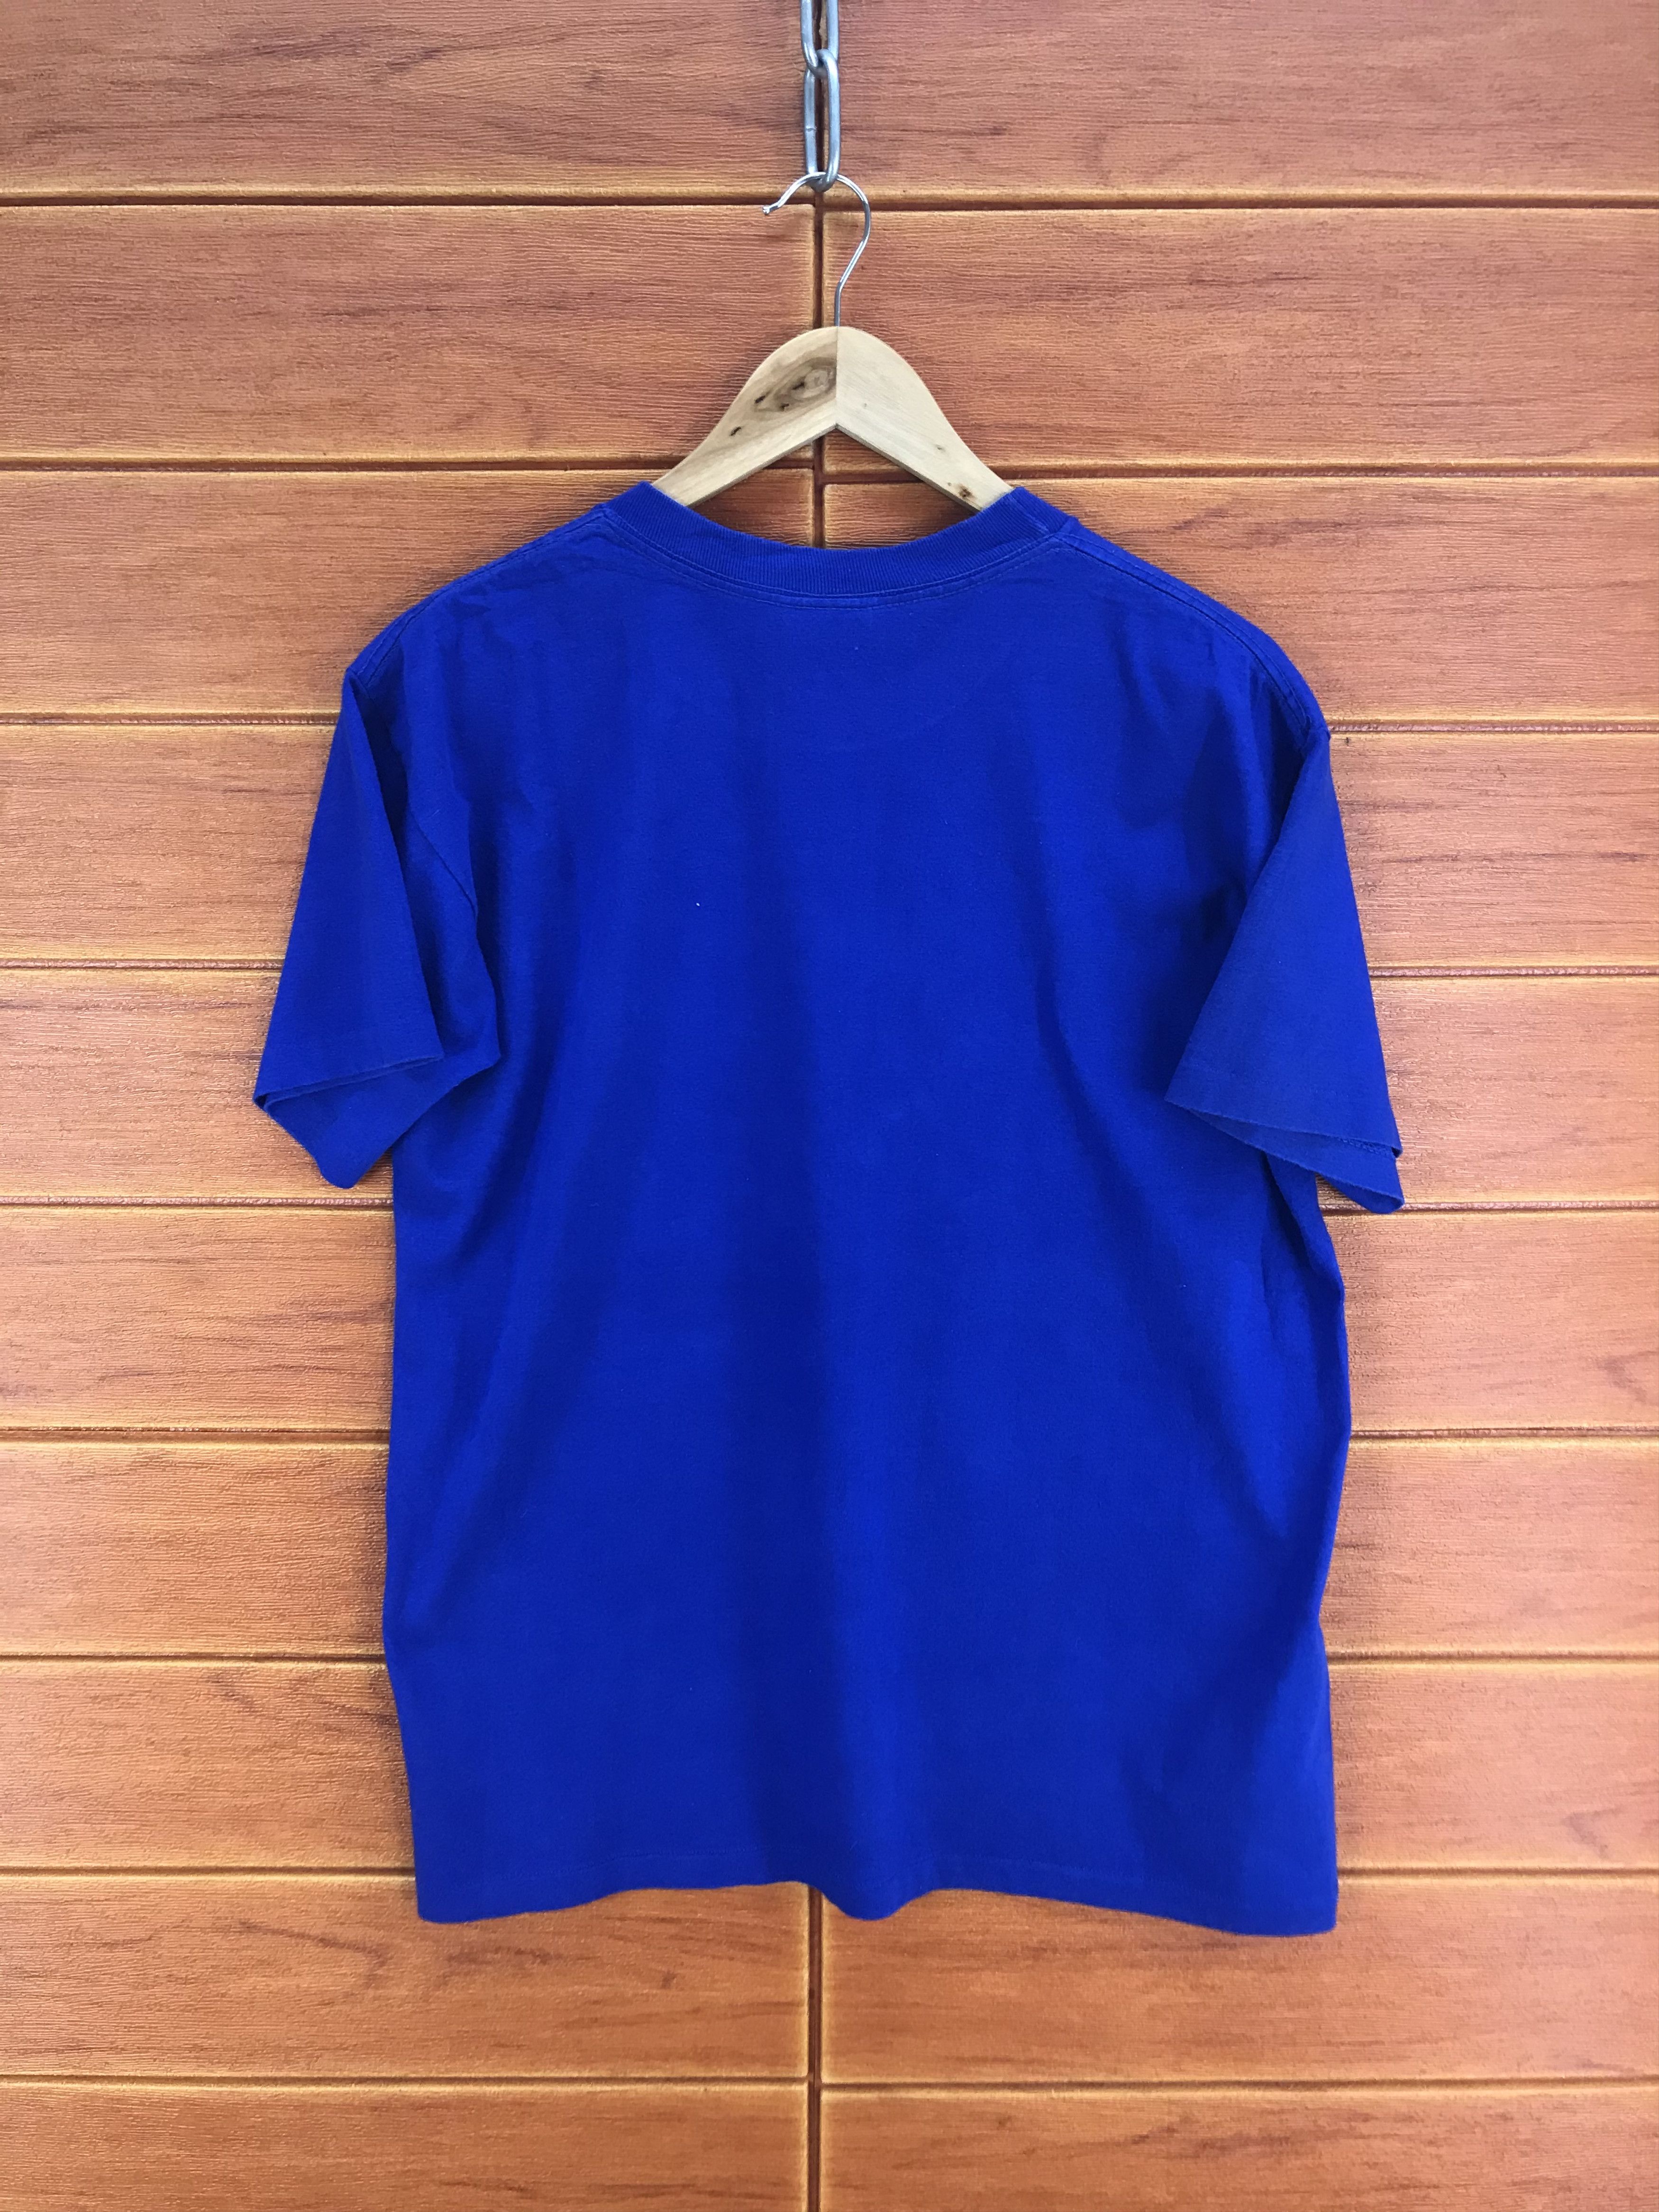 Vintage Vintage 80s Duke Blue Devils T-Shirt Size US M / EU 48-50 / 2 - 6 Preview